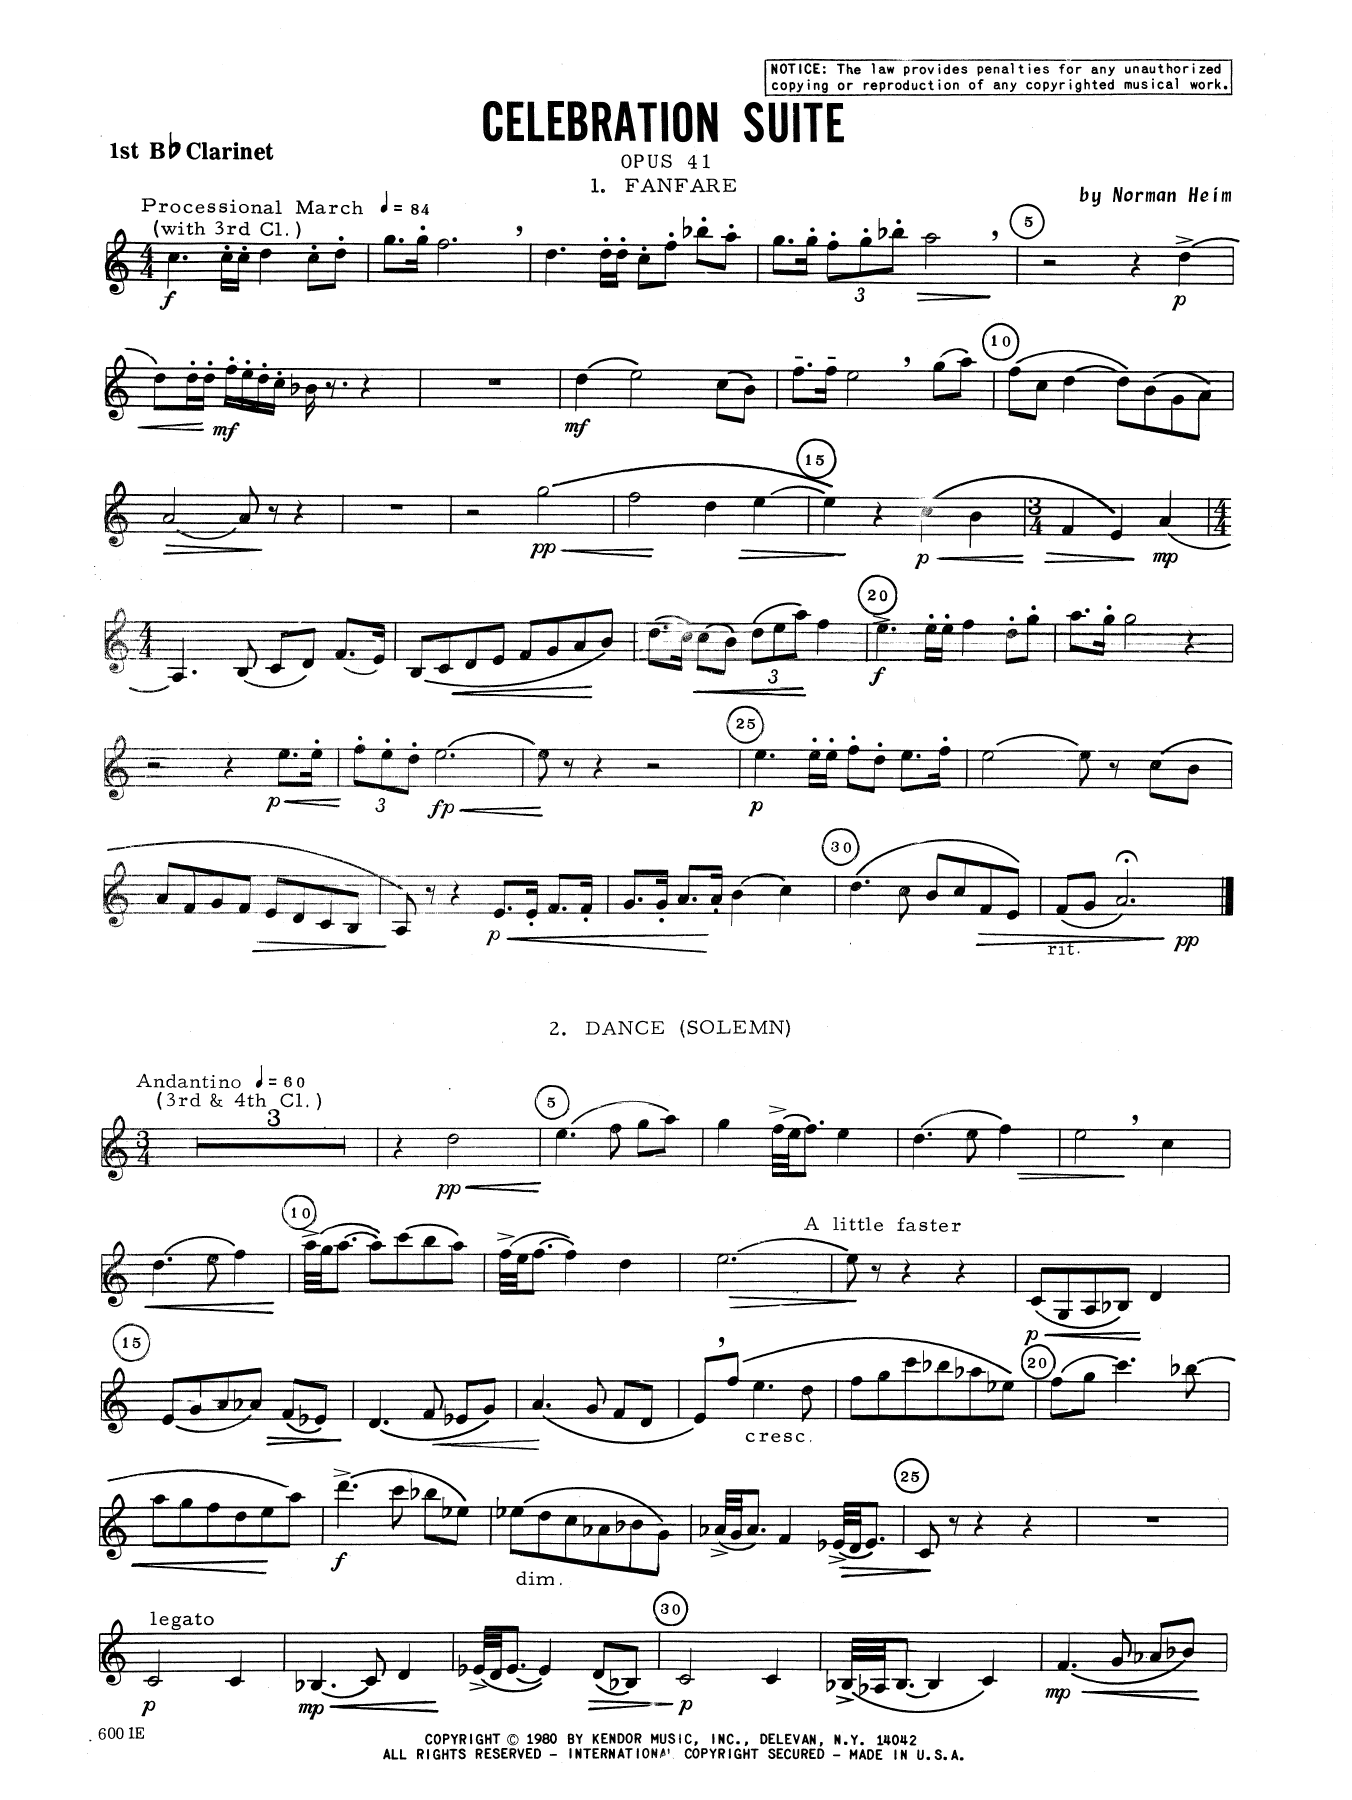 Download Heim Celebration Suite - 1st Bb Clarinet Sheet Music